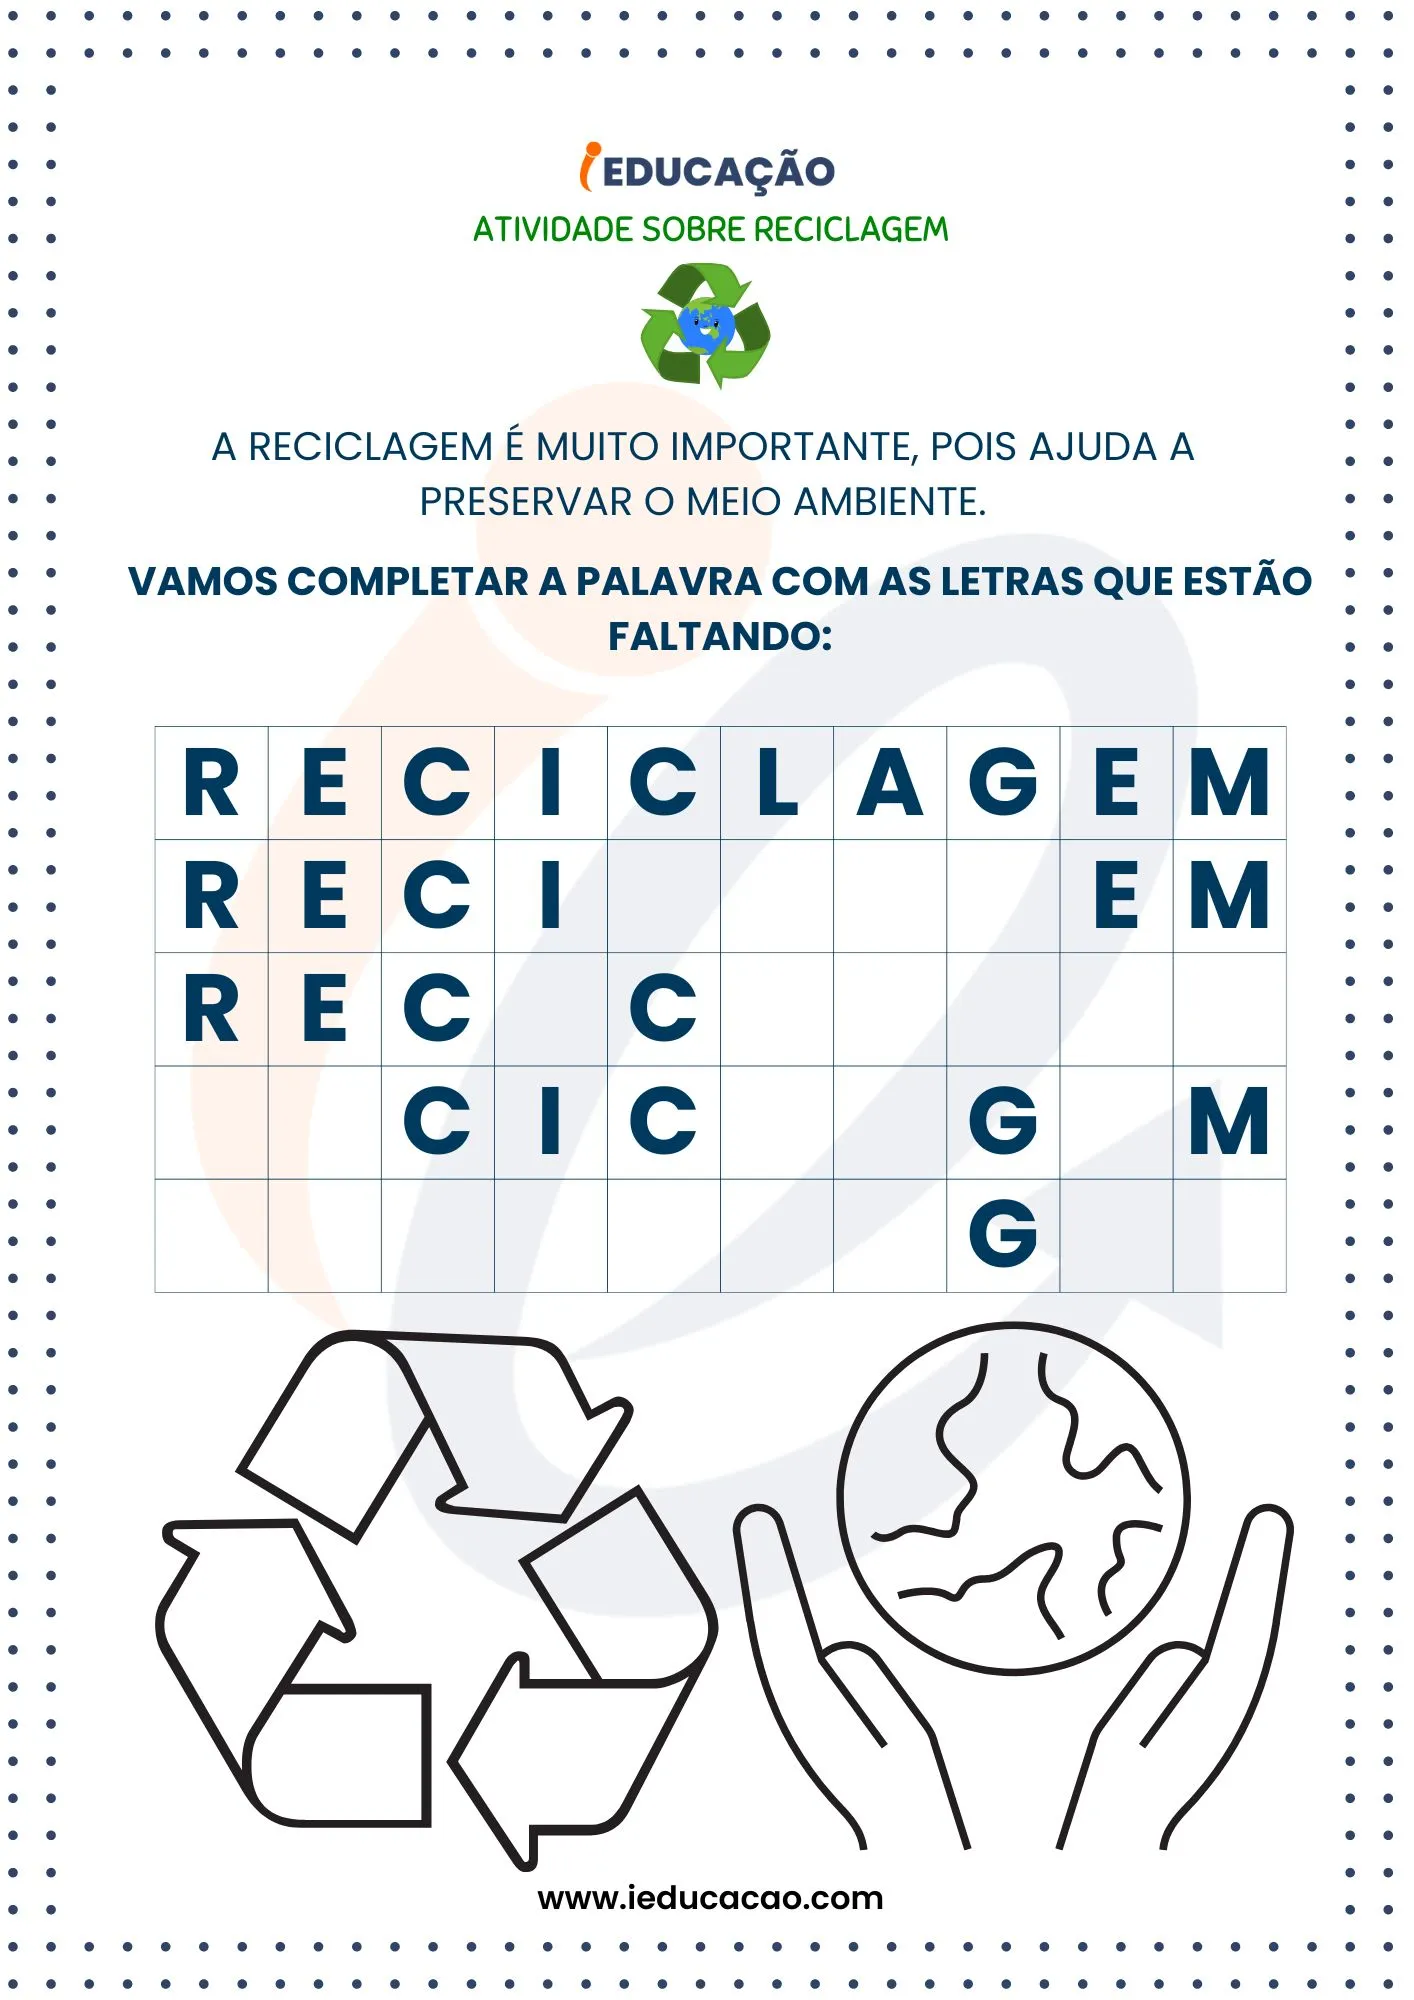 Atividades Sobre Reciclagem na Educação Infantil- Completar a Palavra com as Letras